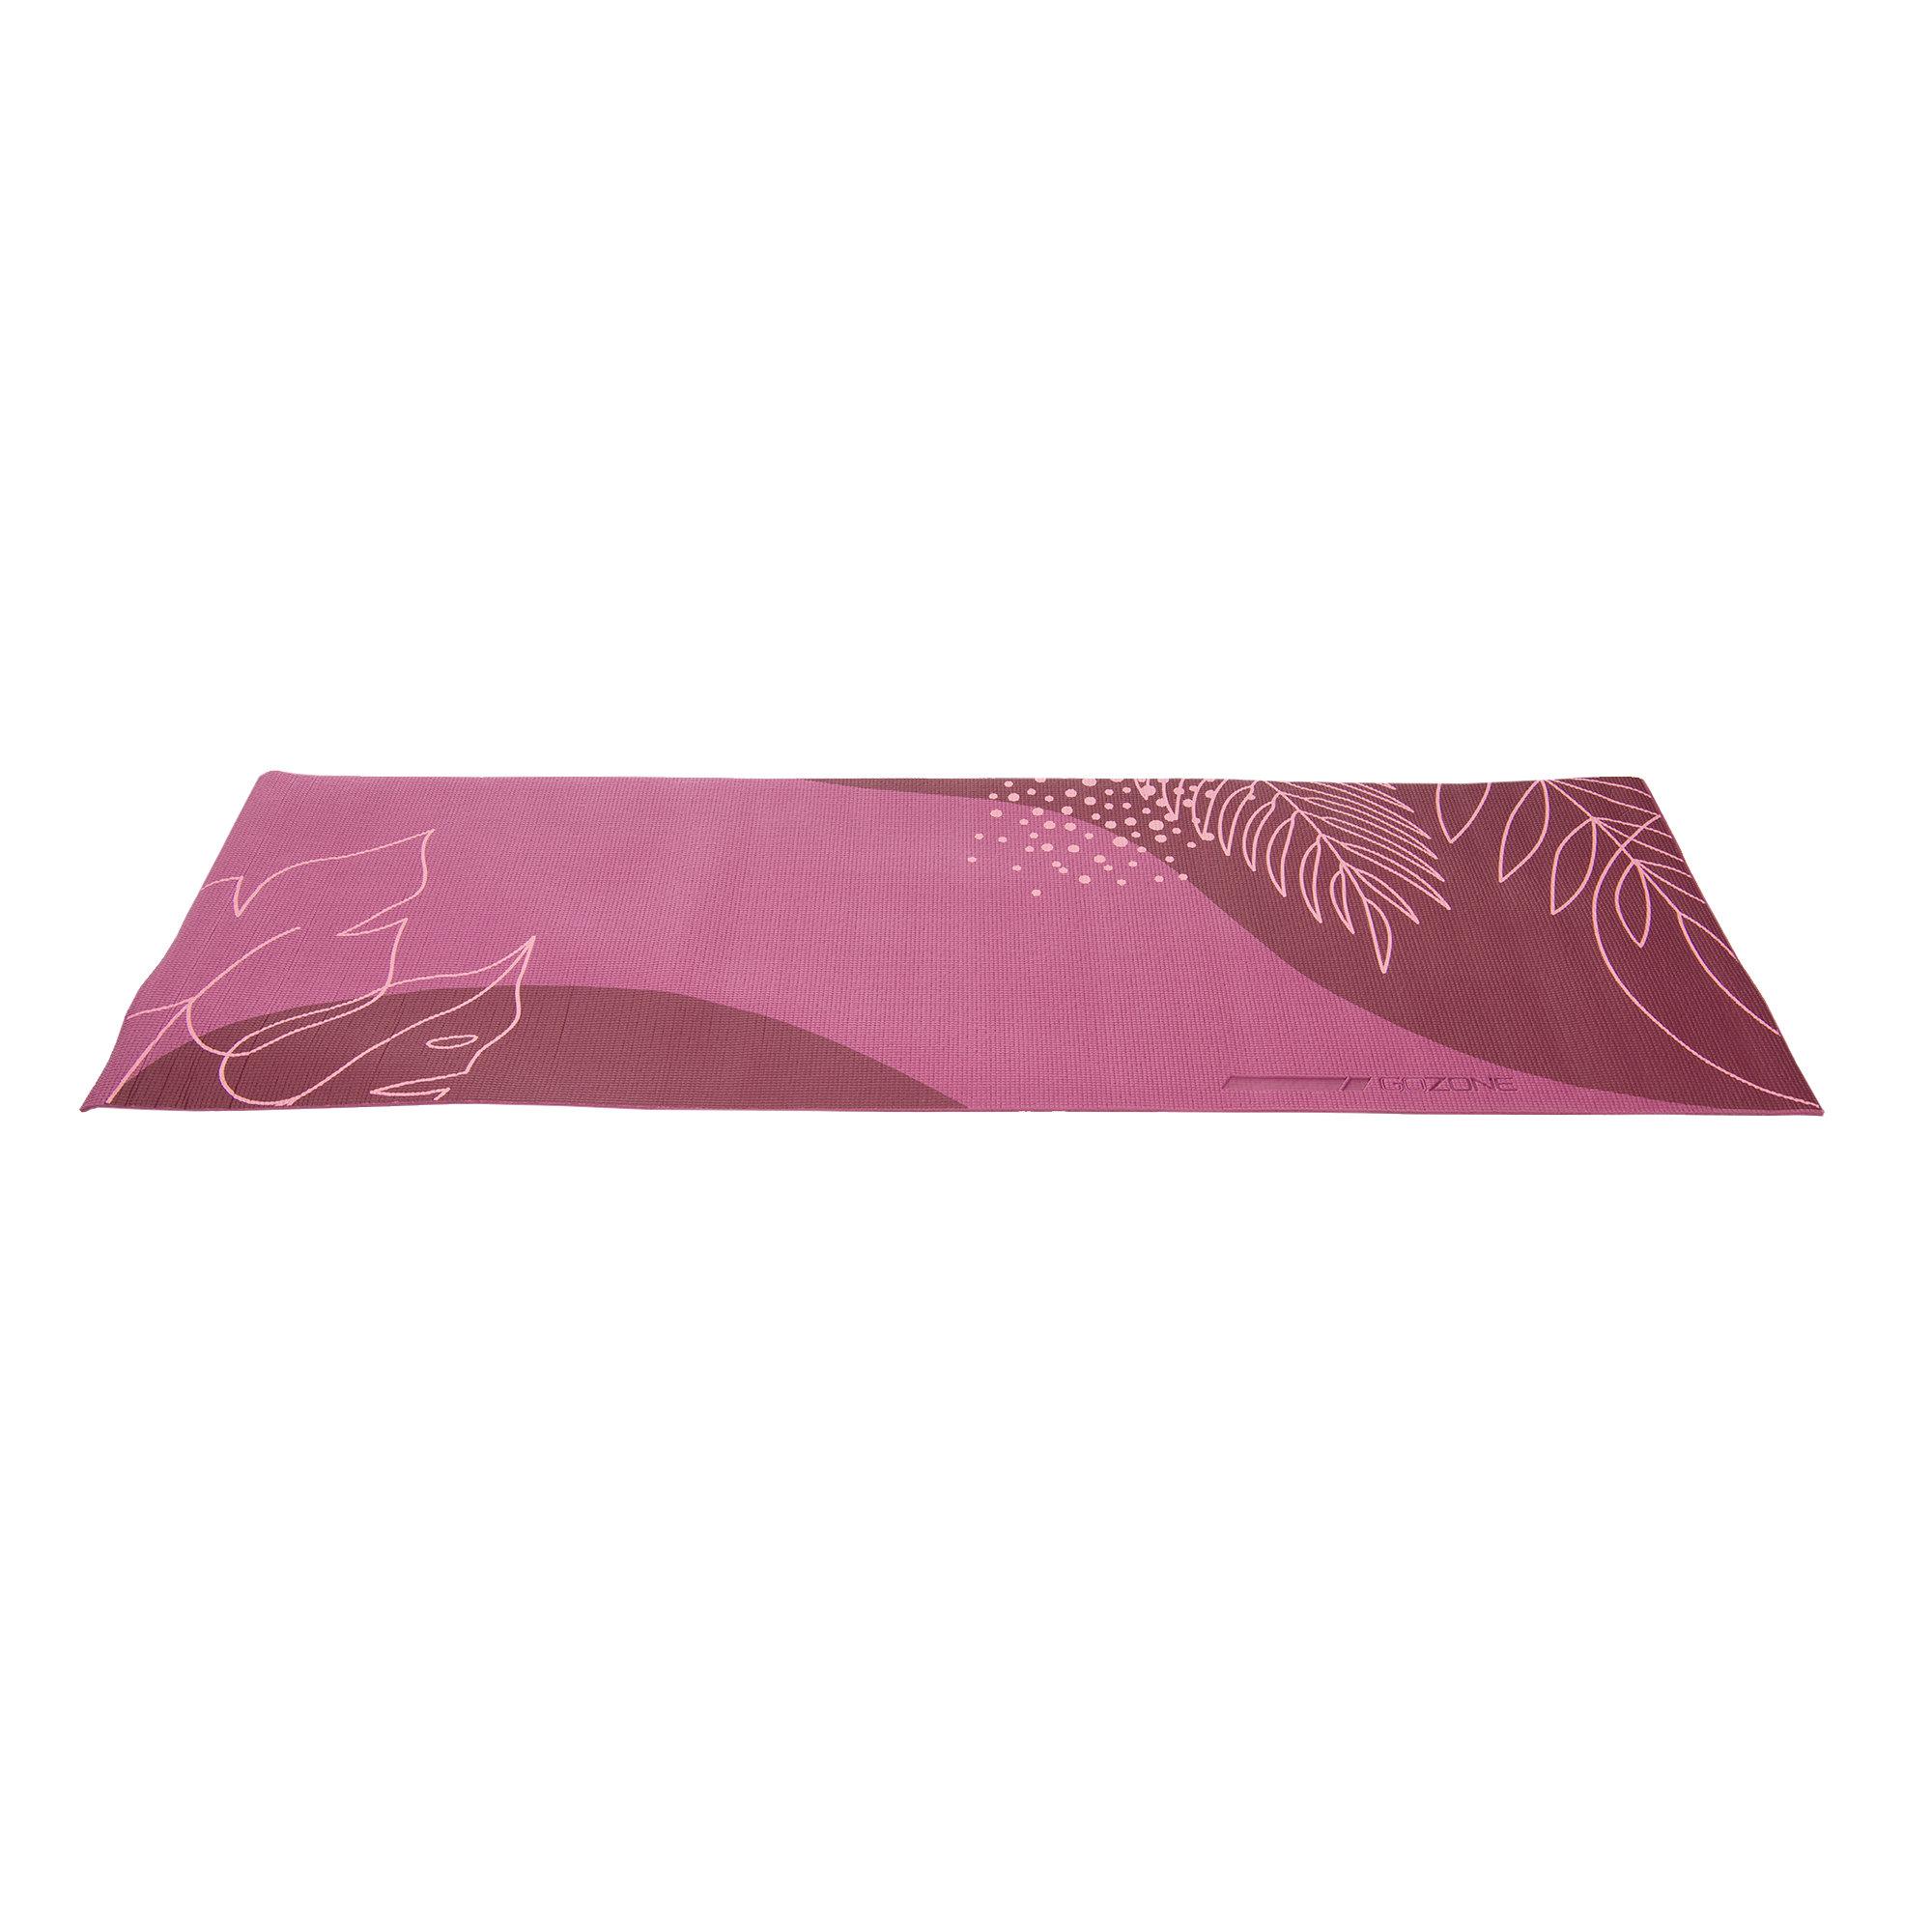 Buy Gaiam 6mm TPE Premium Printed Yoga Mat Blush at